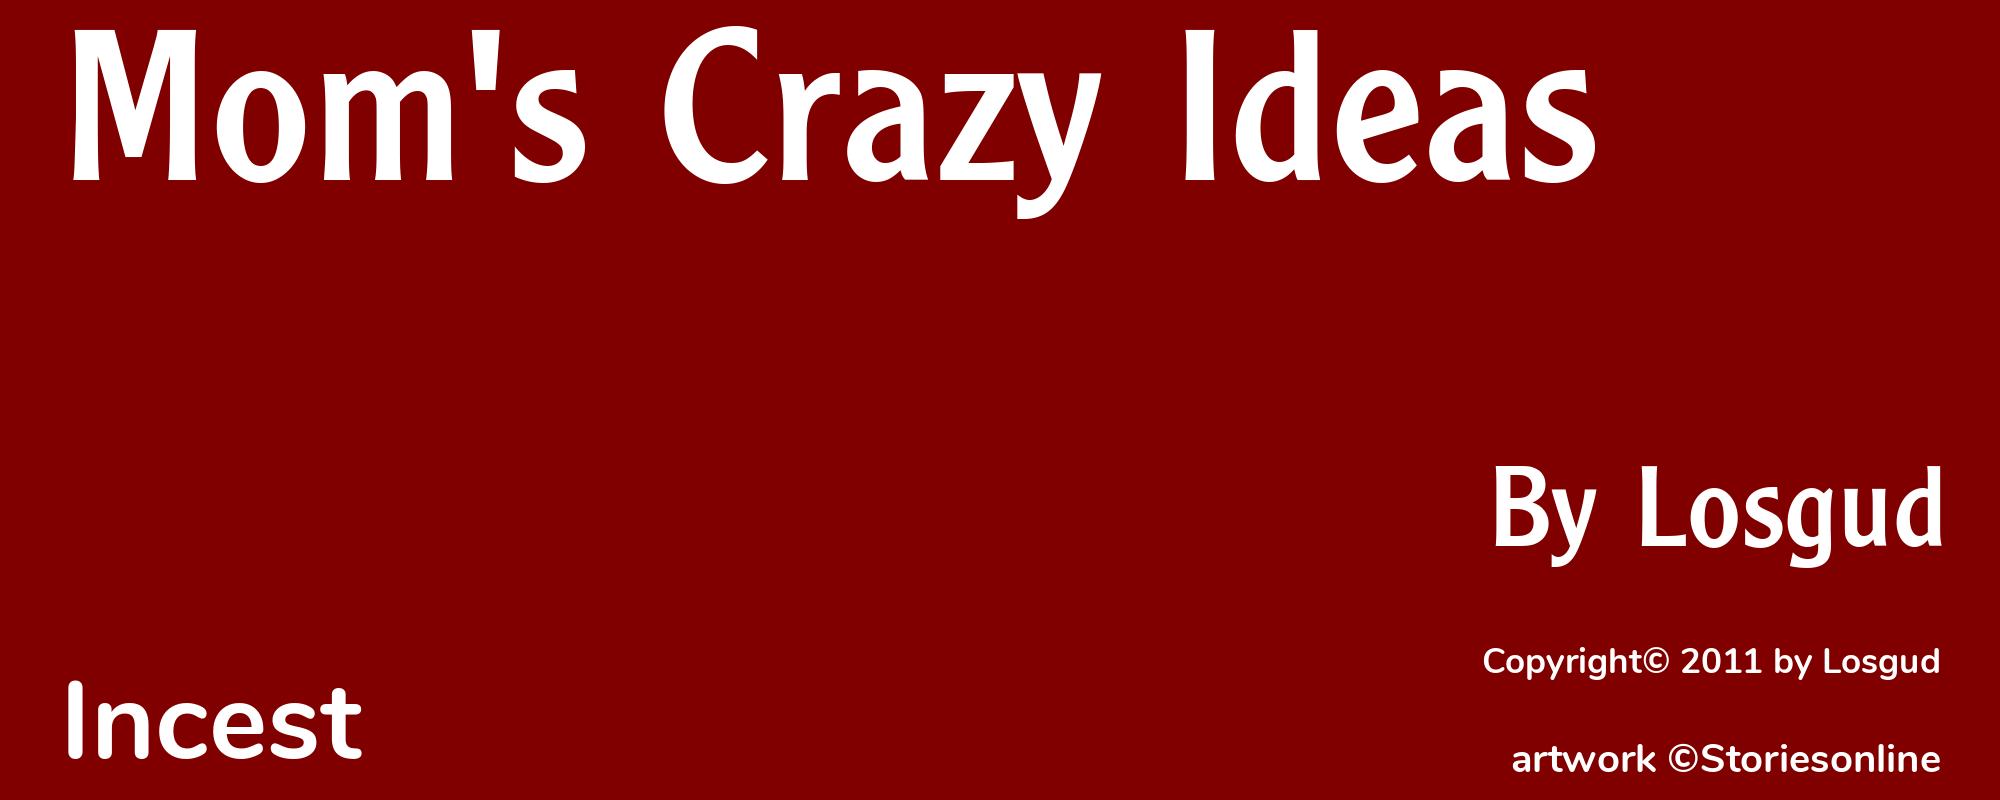 Mom's Crazy Ideas - Cover